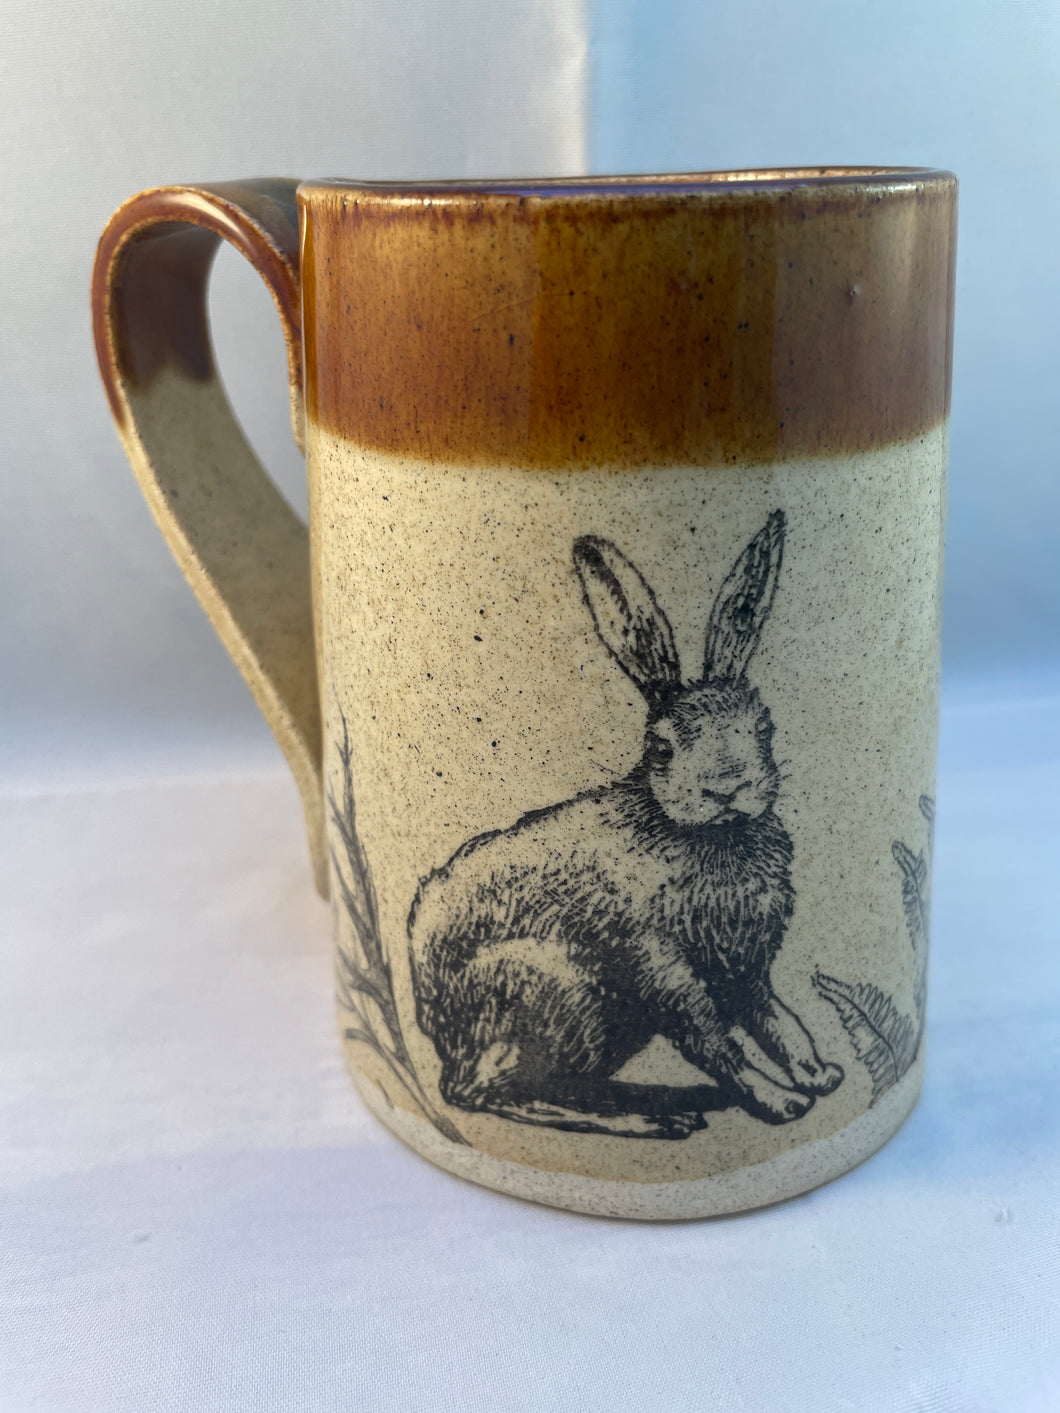 Rabbit, Fern, and Acorn ArtPrize Mug - floating orange